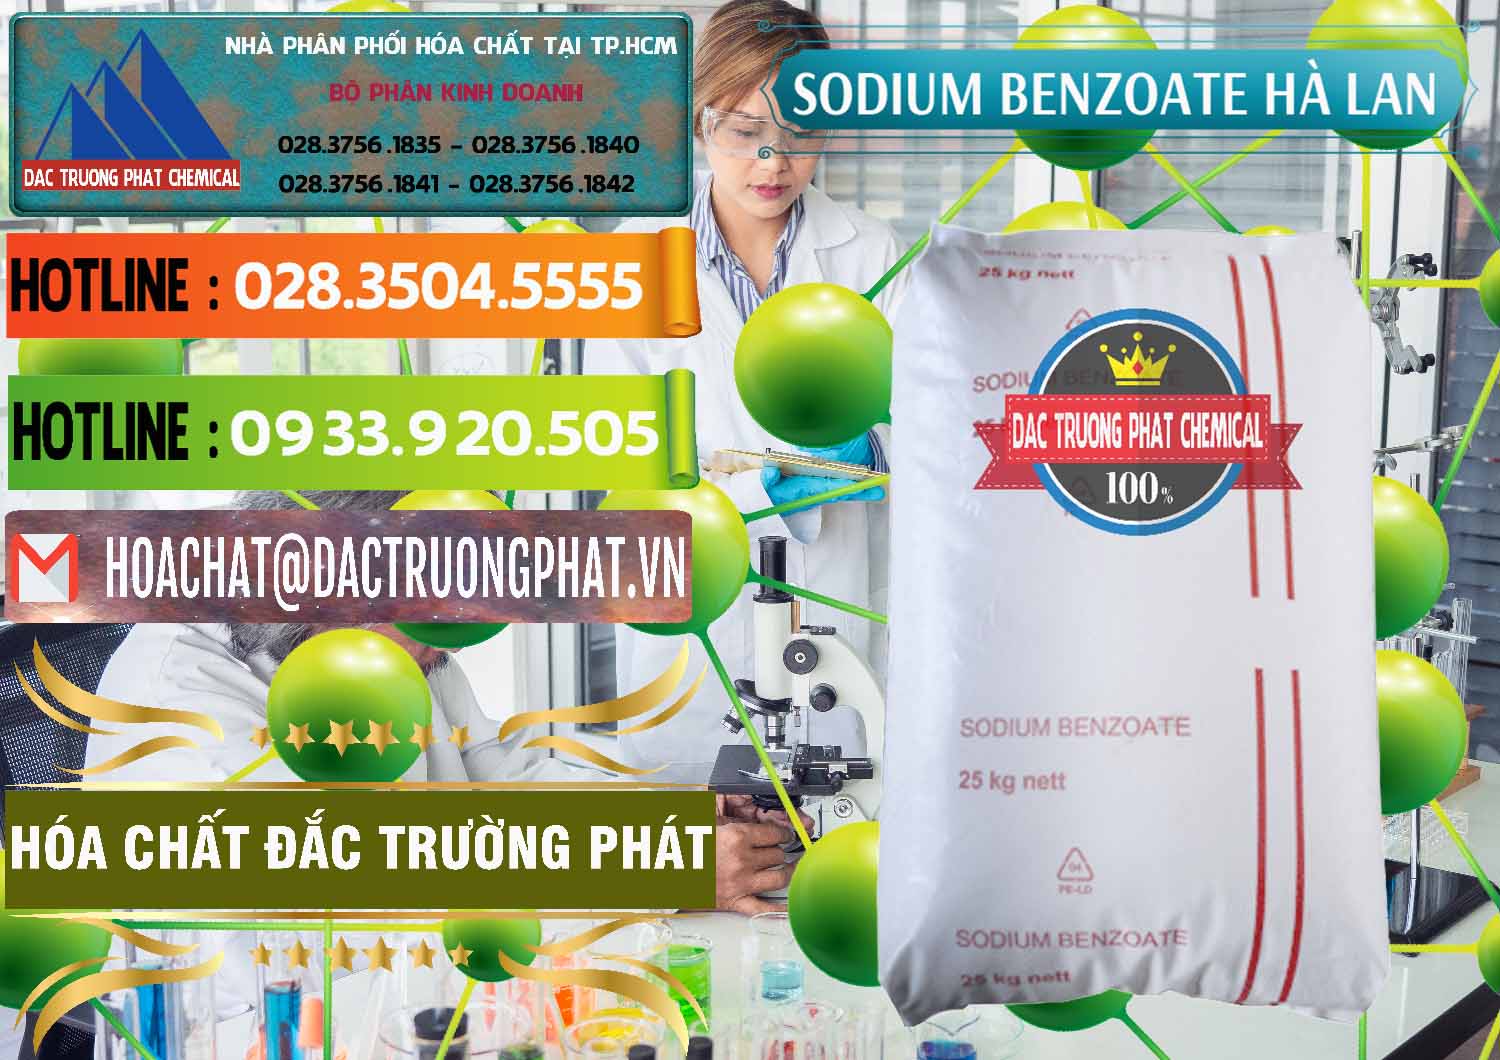 Cty kinh doanh _ bán Sodium Benzoate - Mốc Bột Chữ Cam Hà Lan Netherlands - 0360 - Công ty chuyên cung cấp & bán hóa chất tại TP.HCM - cungcaphoachat.com.vn